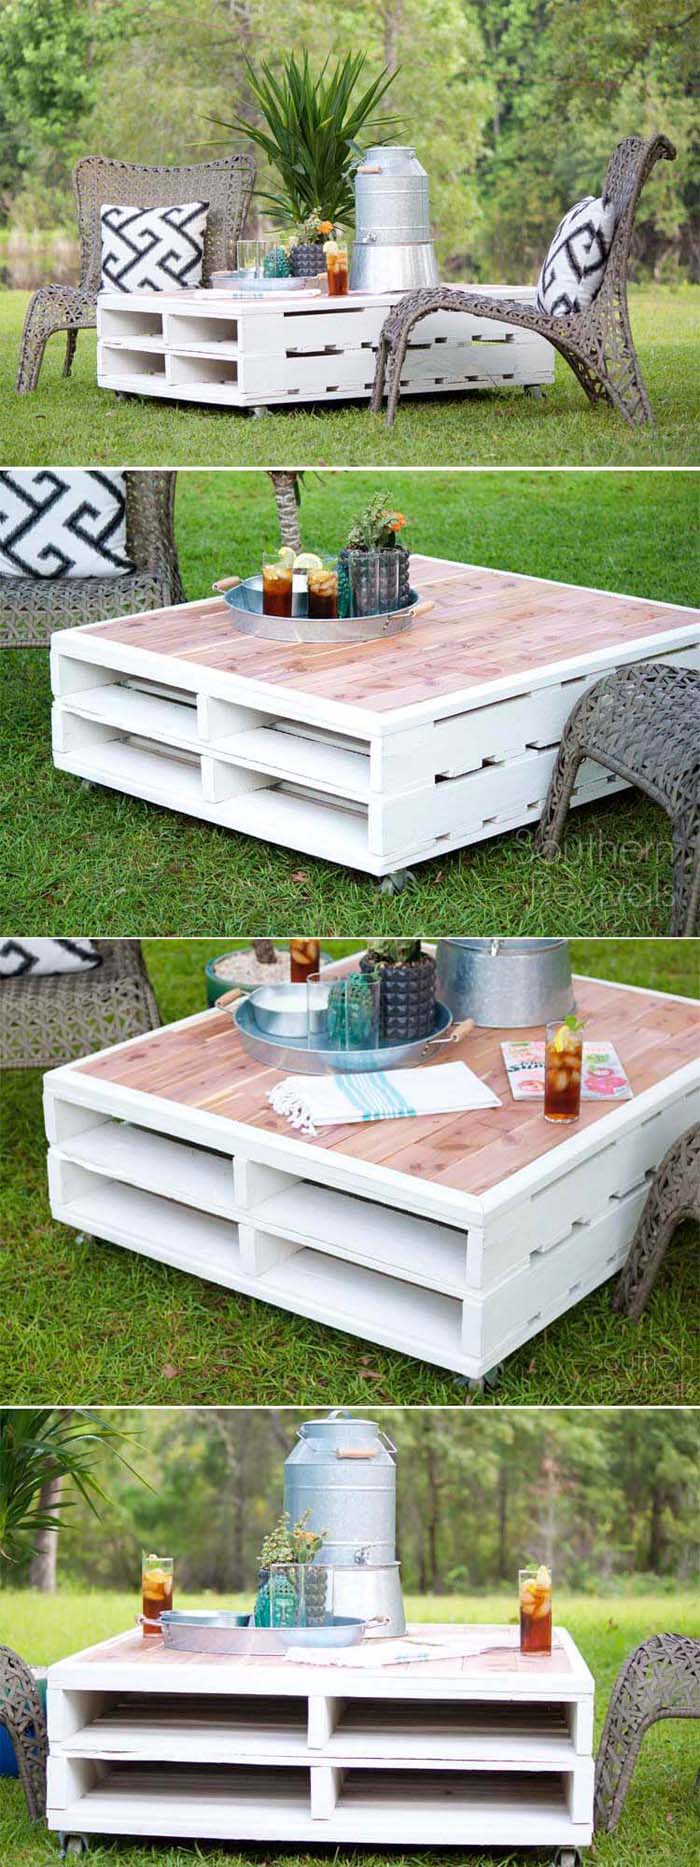 DIY Pallet Coffee Table #pallet #garden #furniture #decorhomeideas